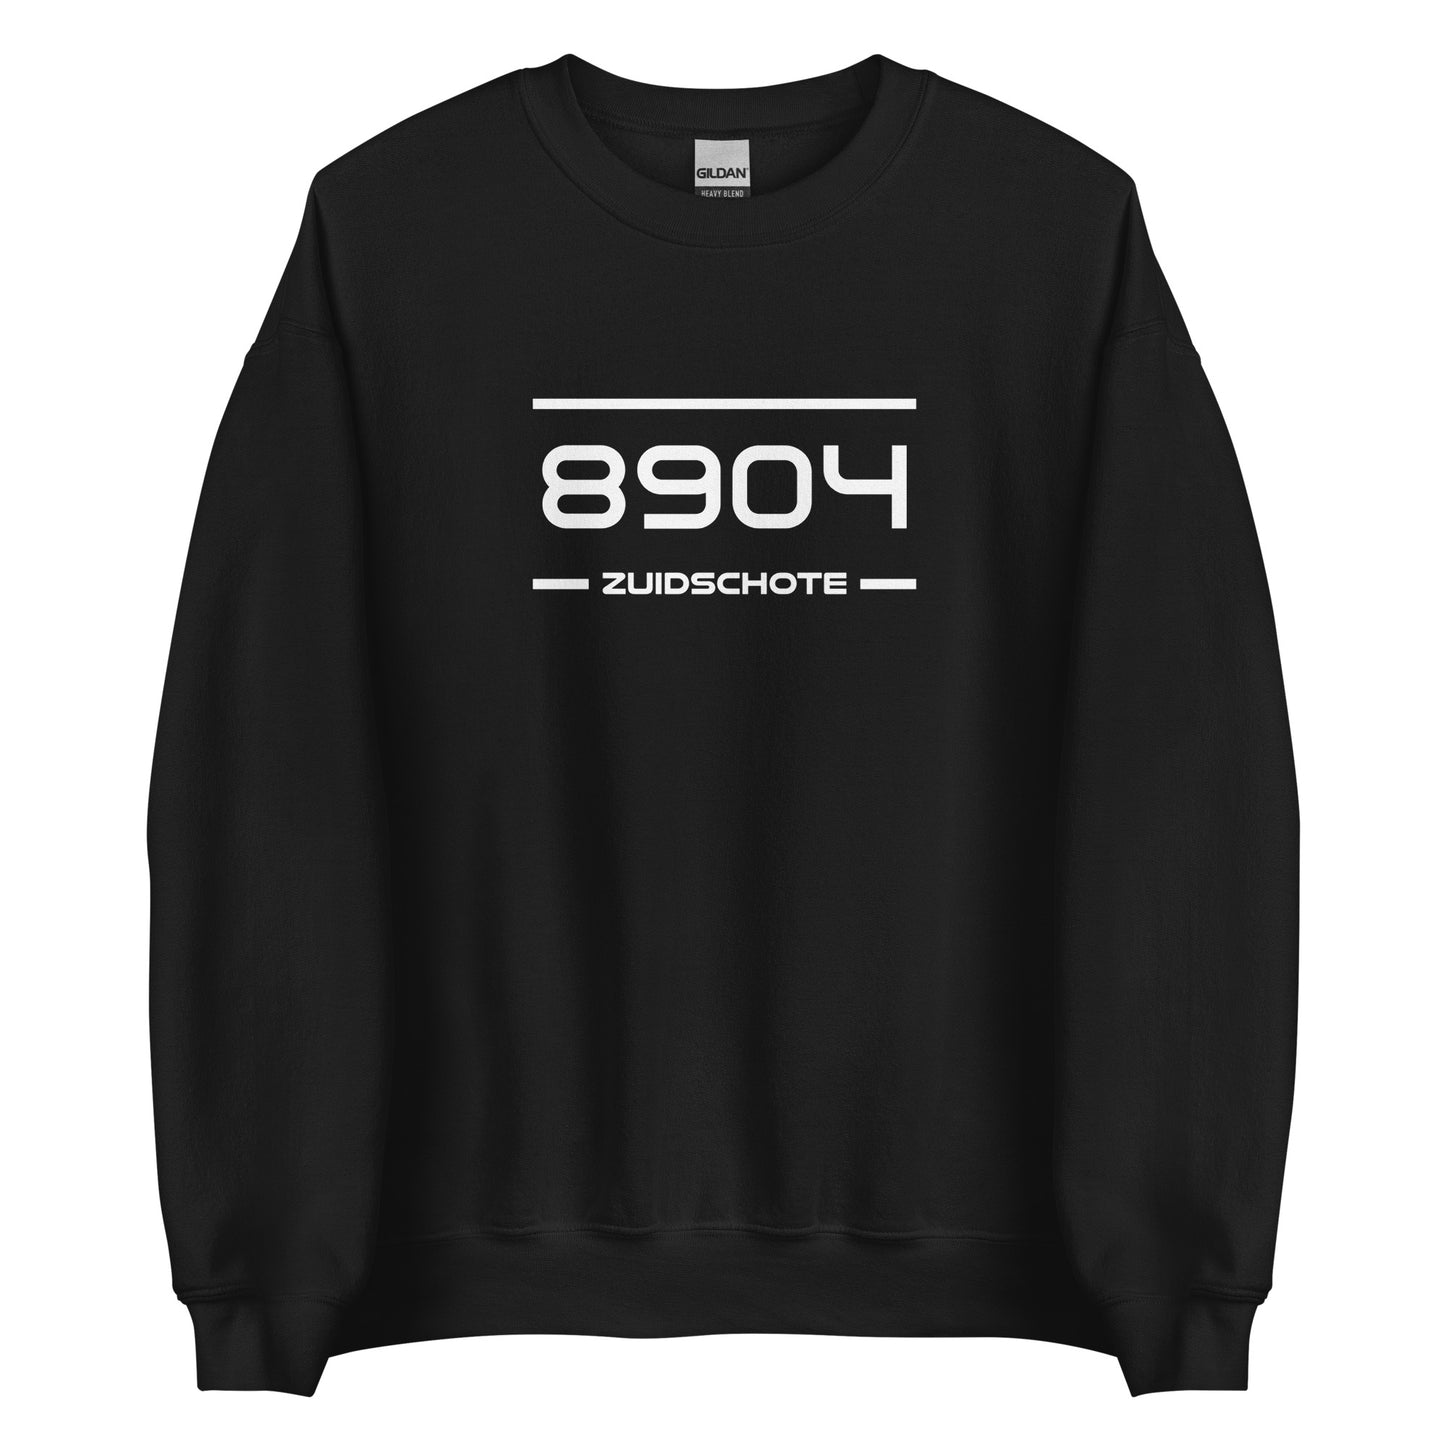 Sweater - 8904 - Zuidschote (M/V)